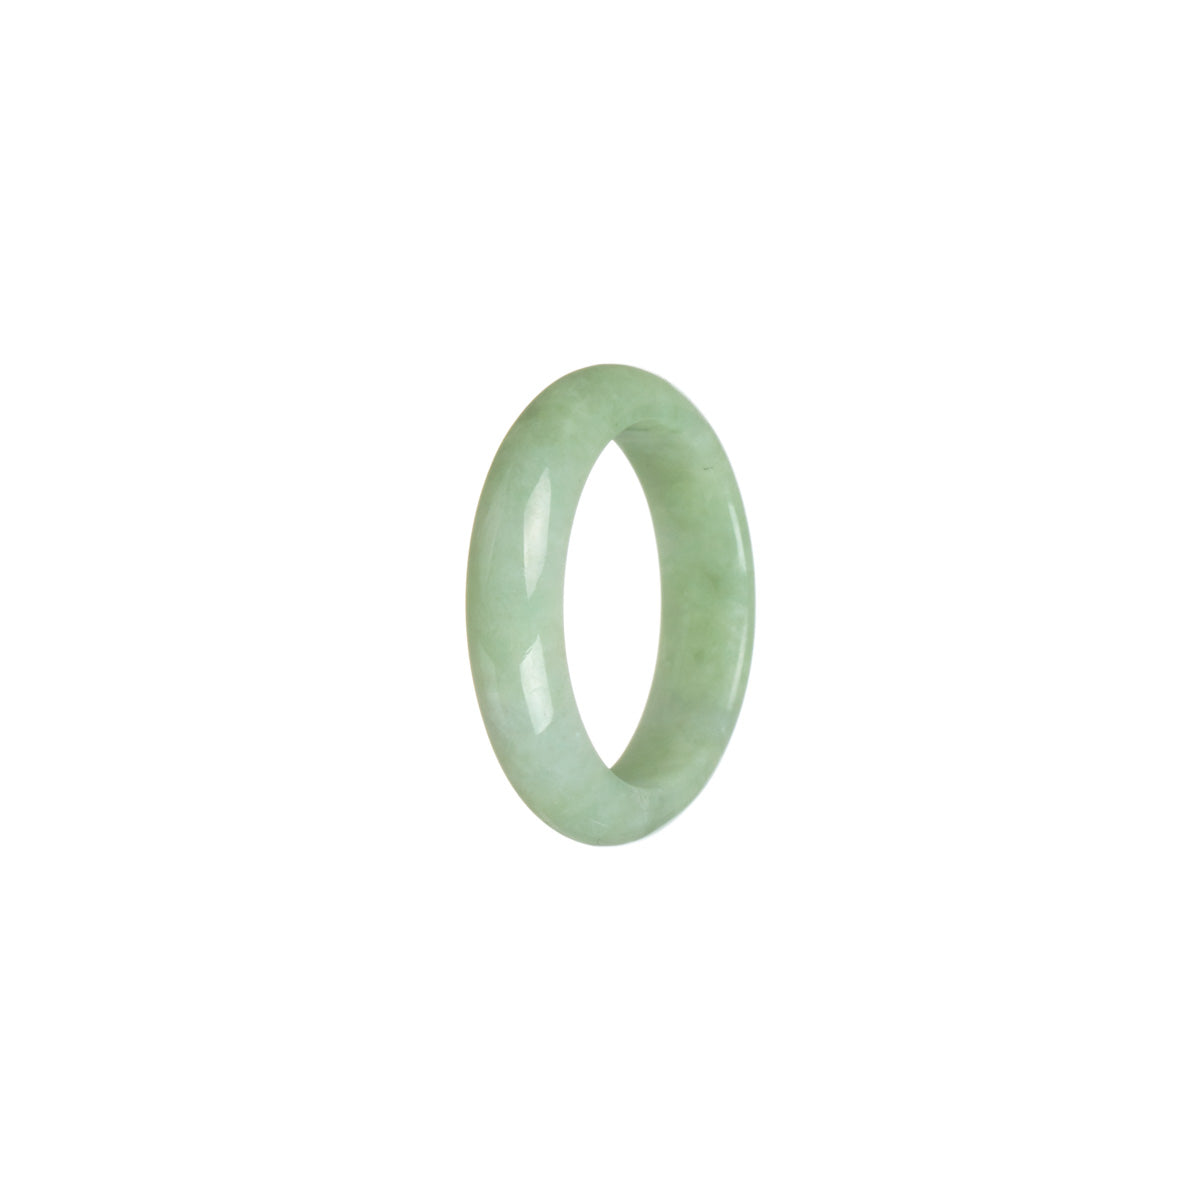 Genuine Light green Burmese Jade Ring - Size S 1/2